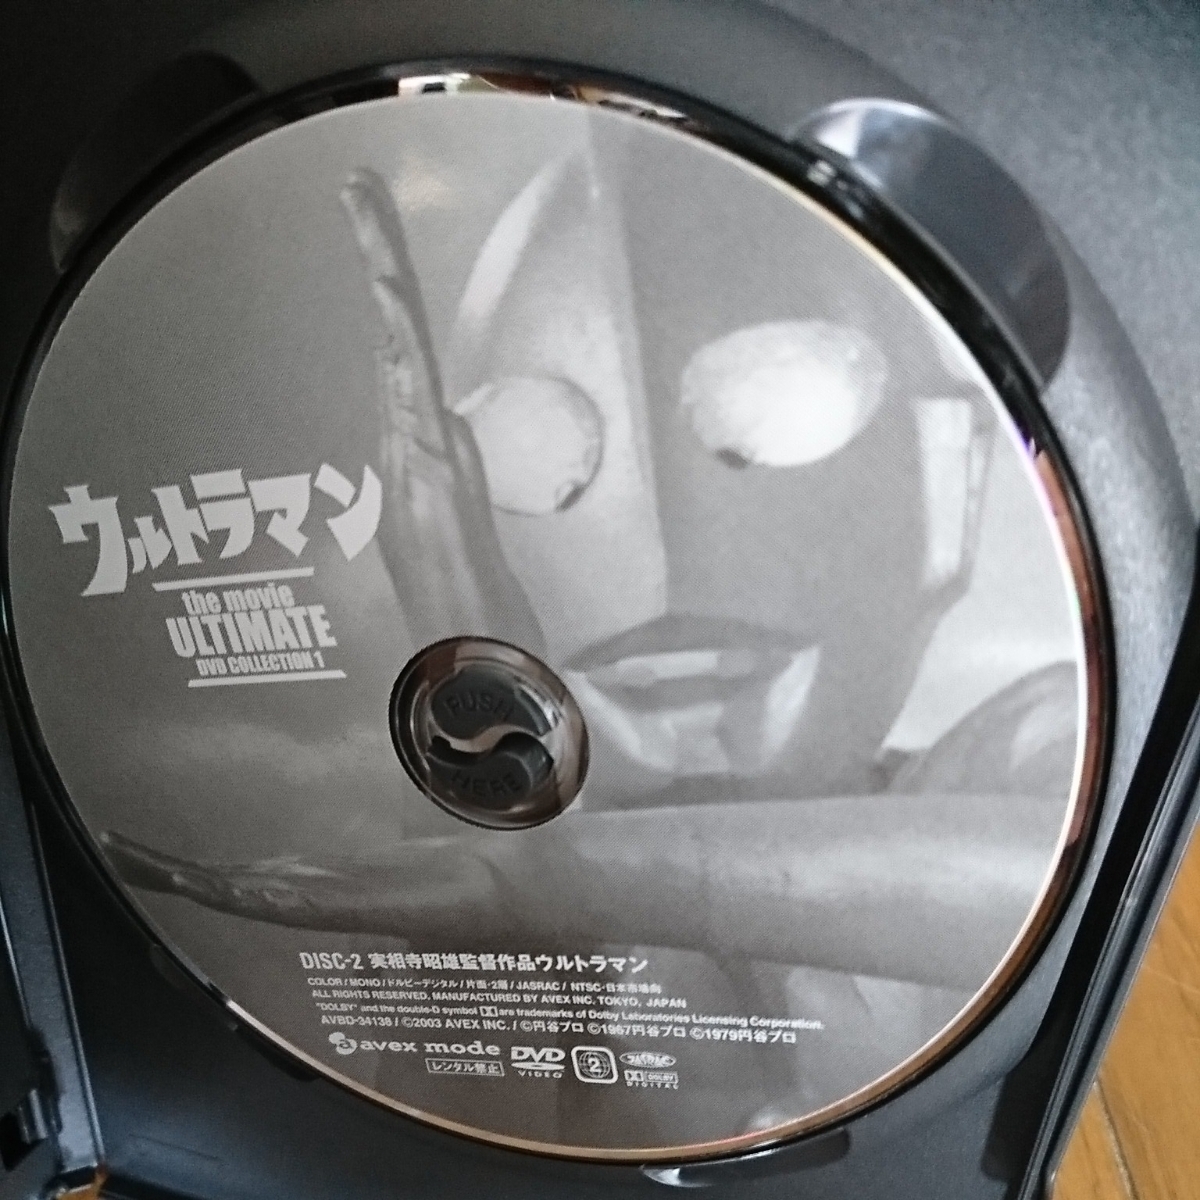 Ultraman ULTIMATE DVD系列1，配備Ultraman Taro數字 原文:ウルトラマン ULTIMATE DVDコレクション1 ウルトラマンタロウのフィギュア付き